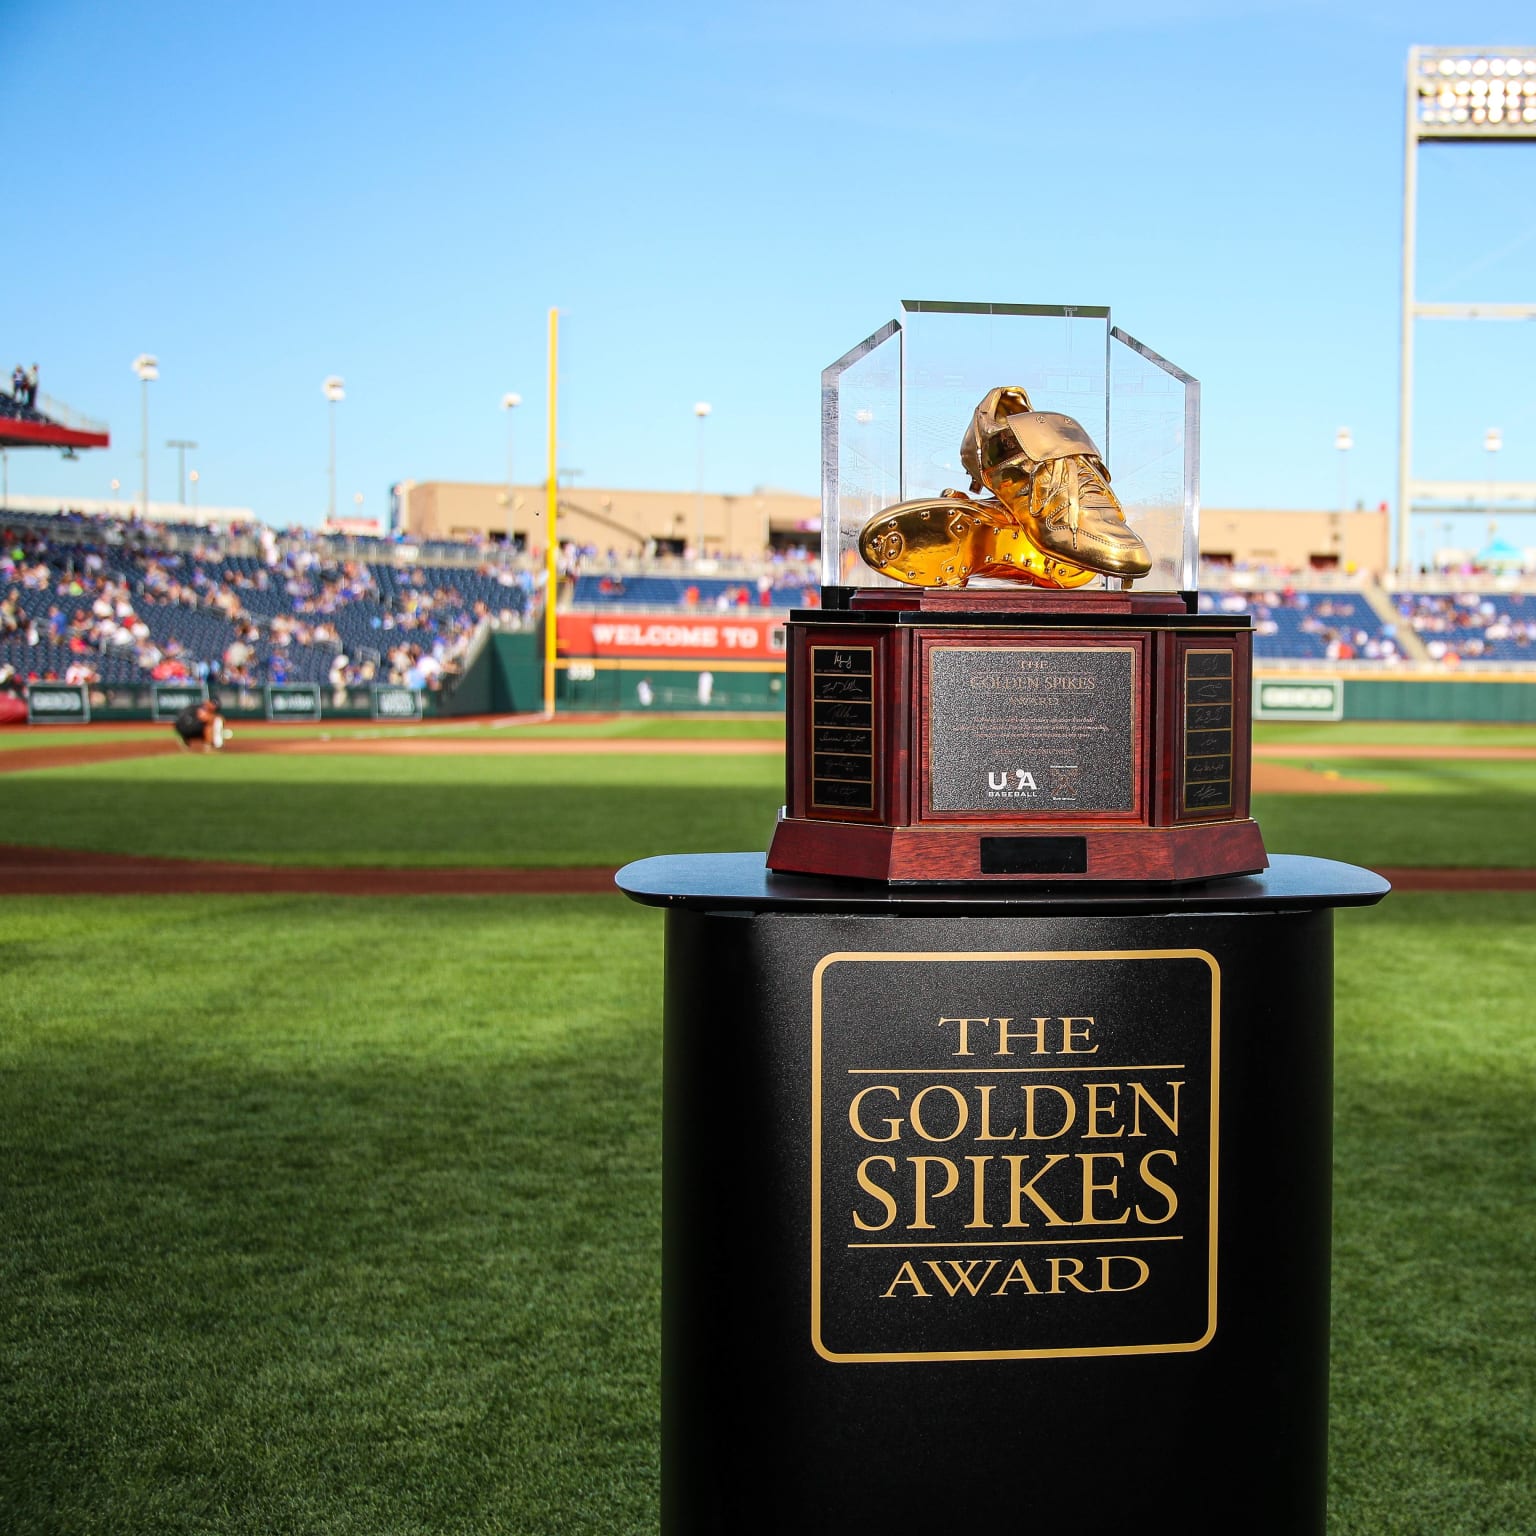 Golden Spikes Award About USA Baseball